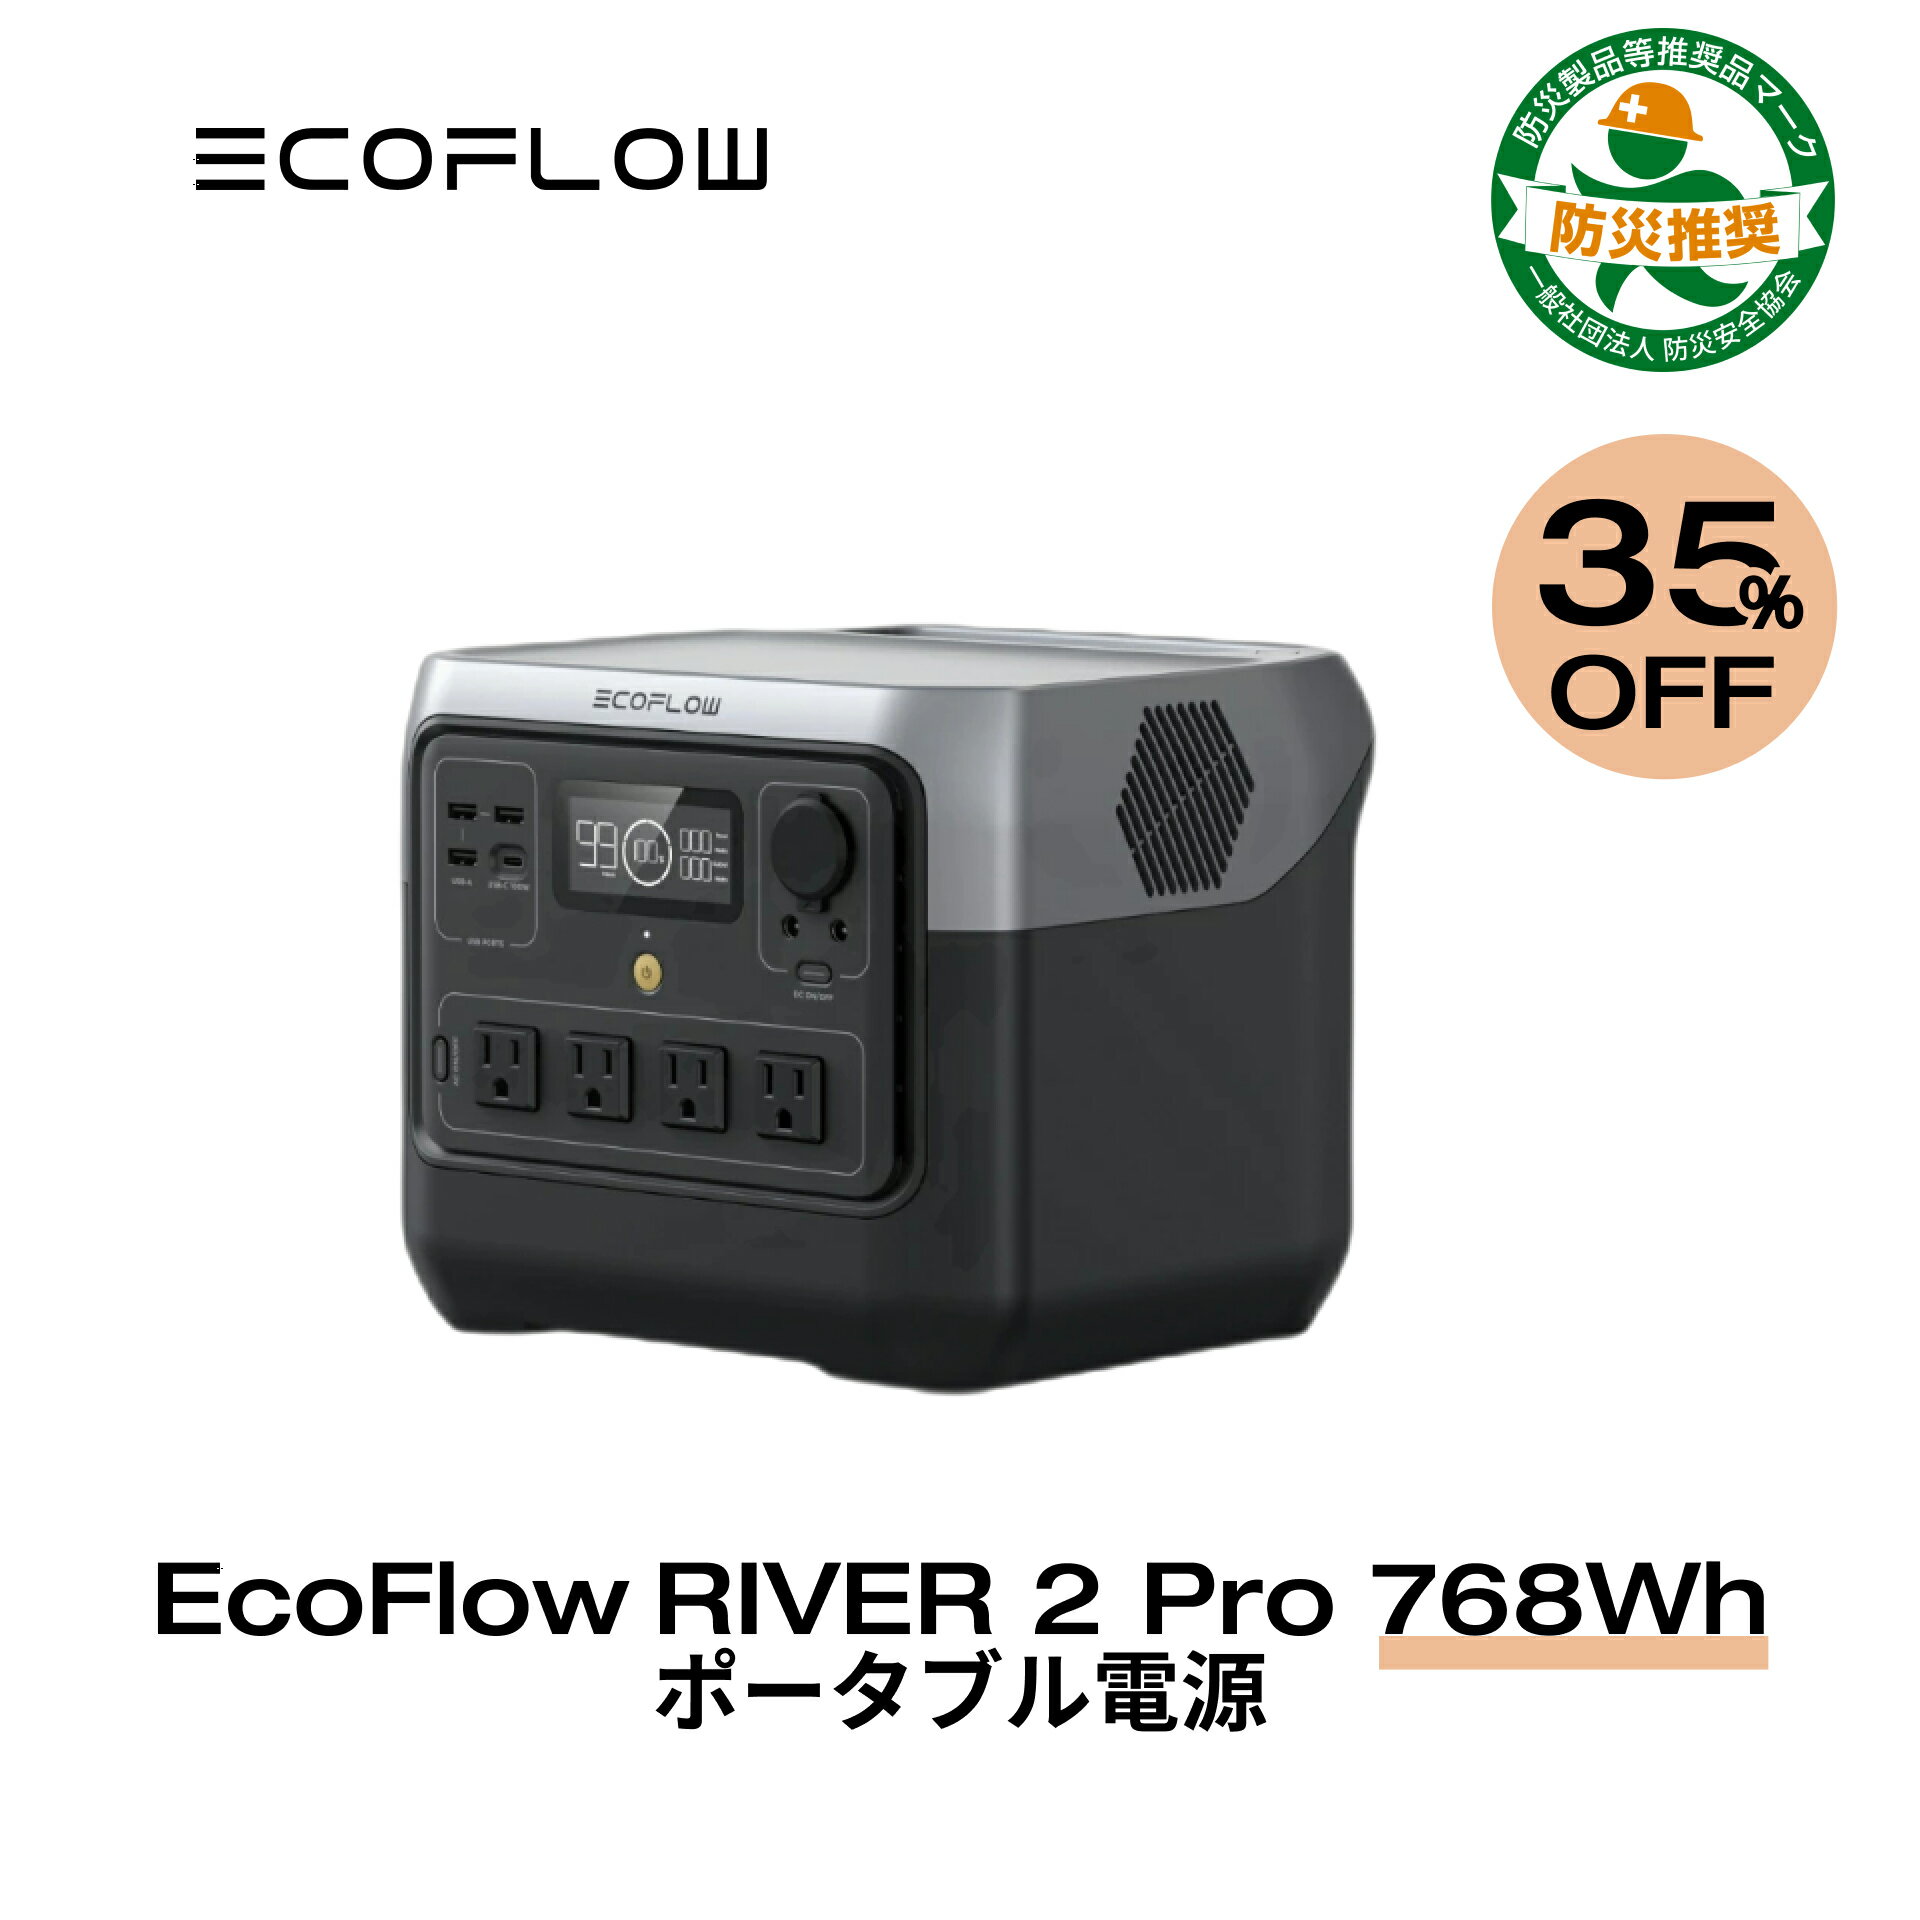 【35%OFFクーポン利用で57,200円!】EcoFl